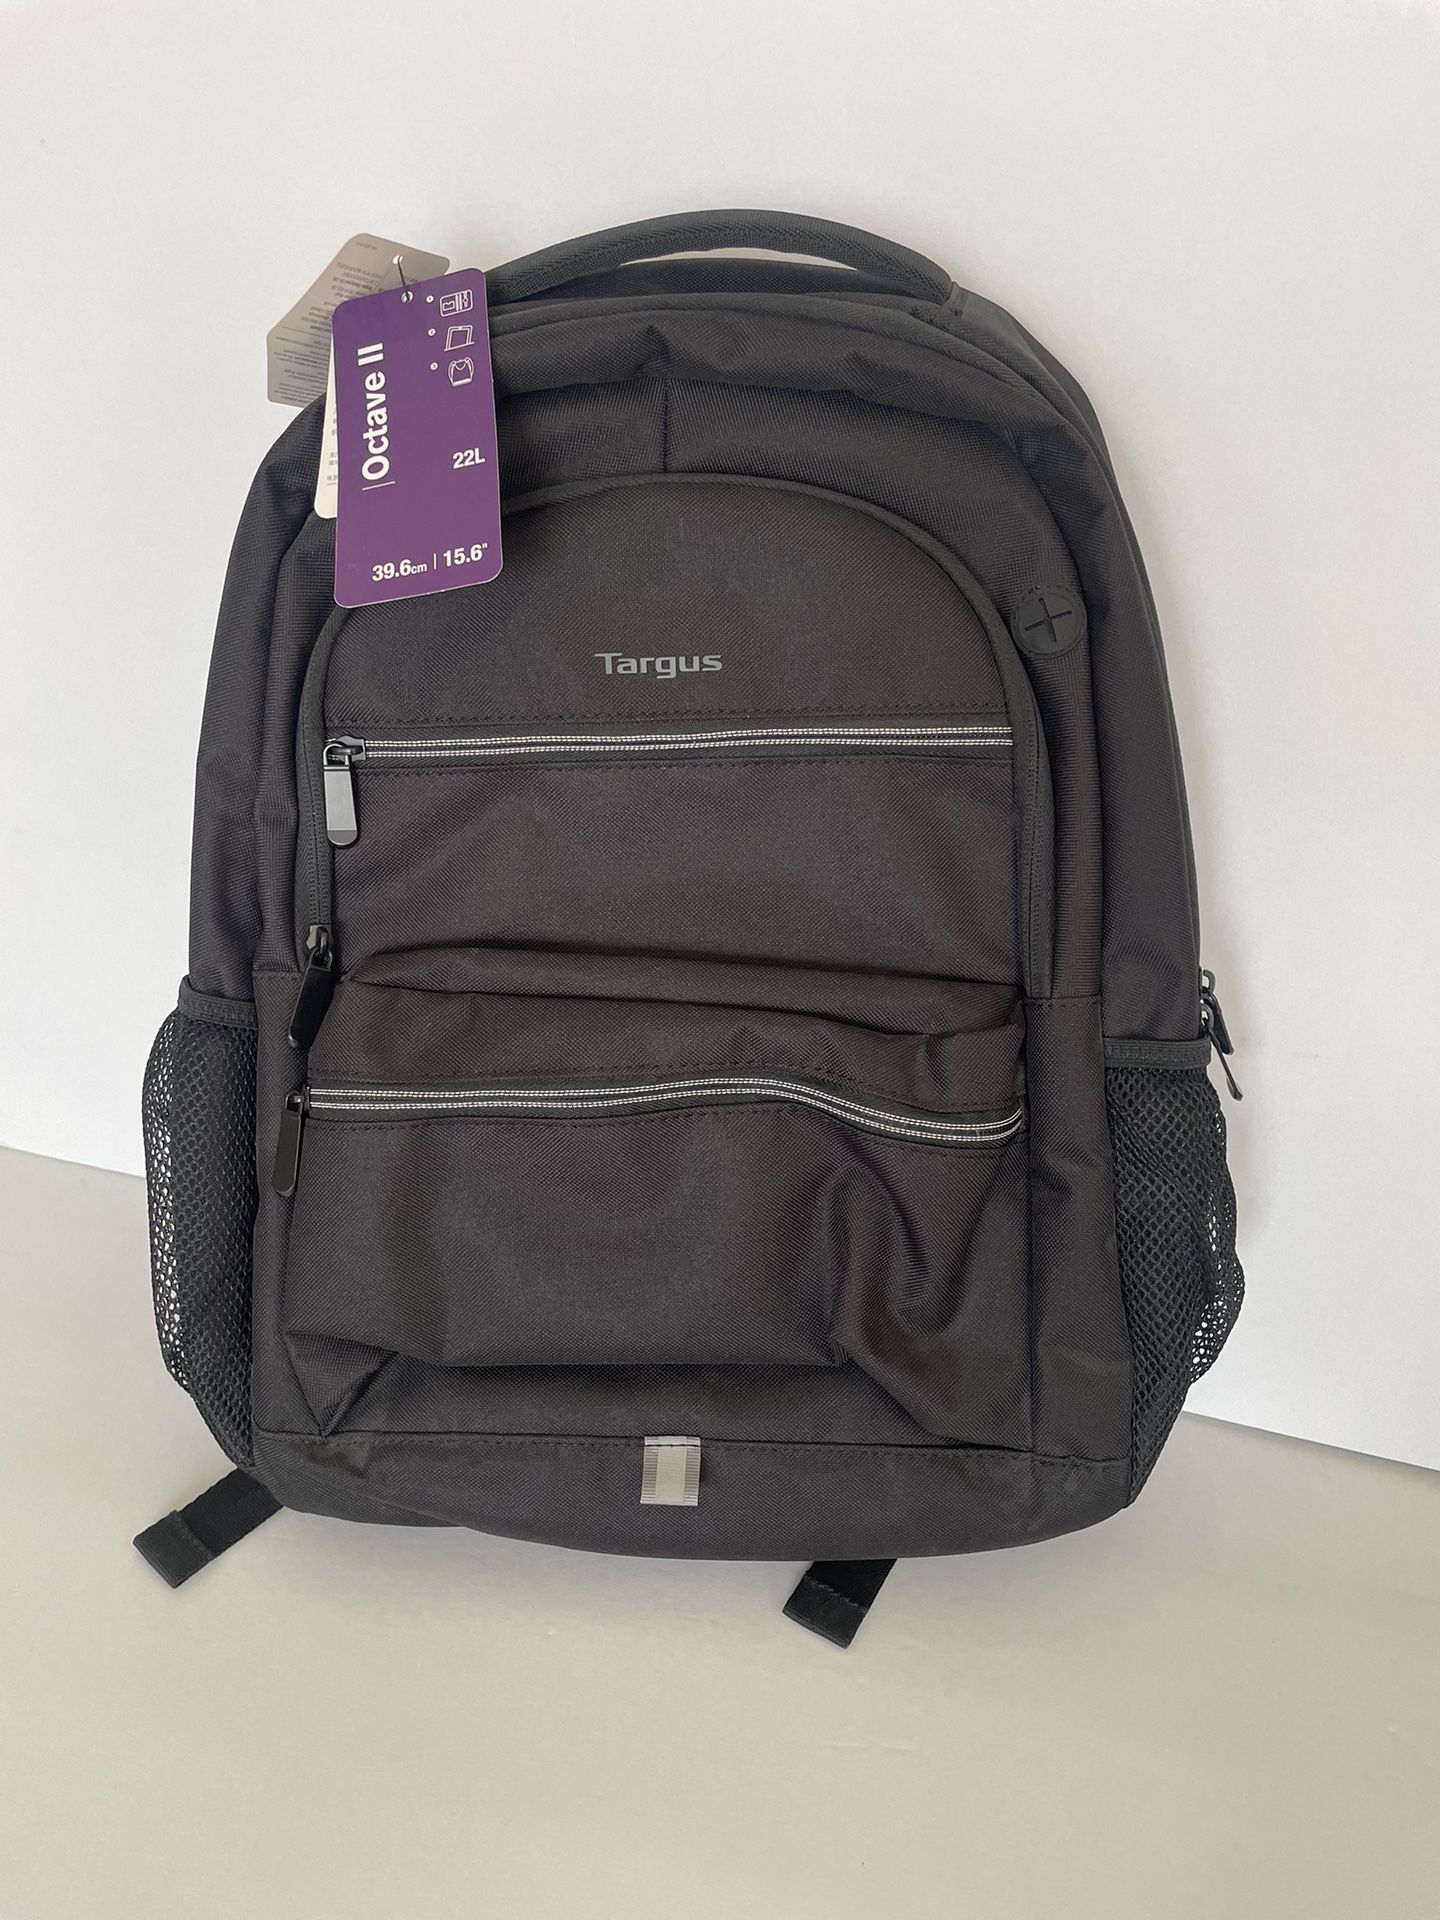 Targus - Octave II Backpack for 15.6 Laptops - Black (Unisex) NWT